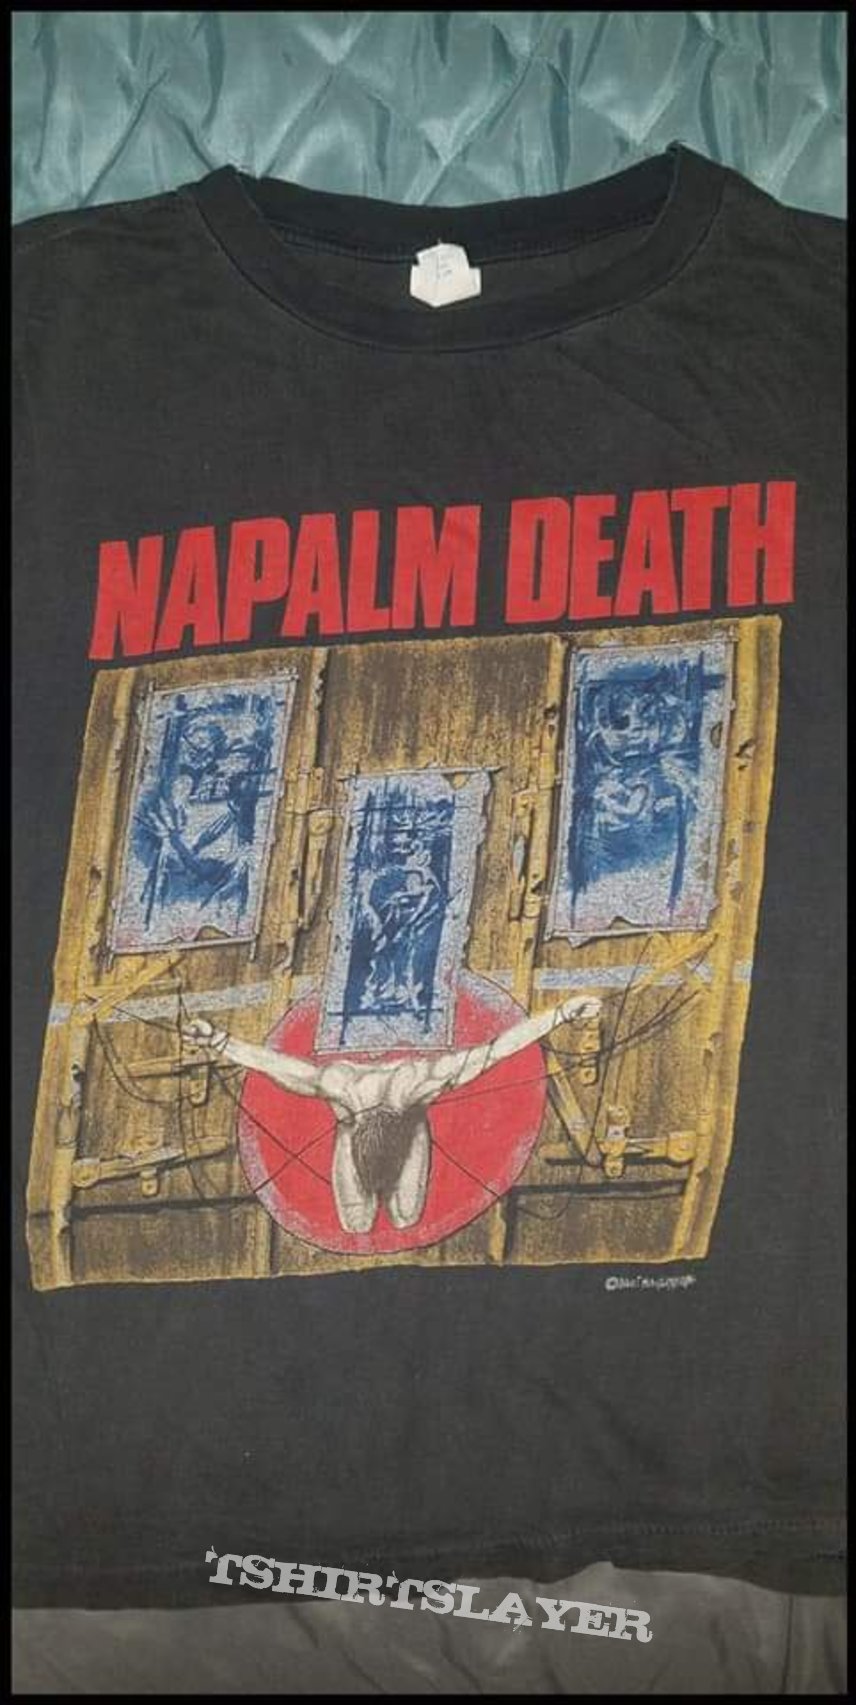 Napalm death shirt